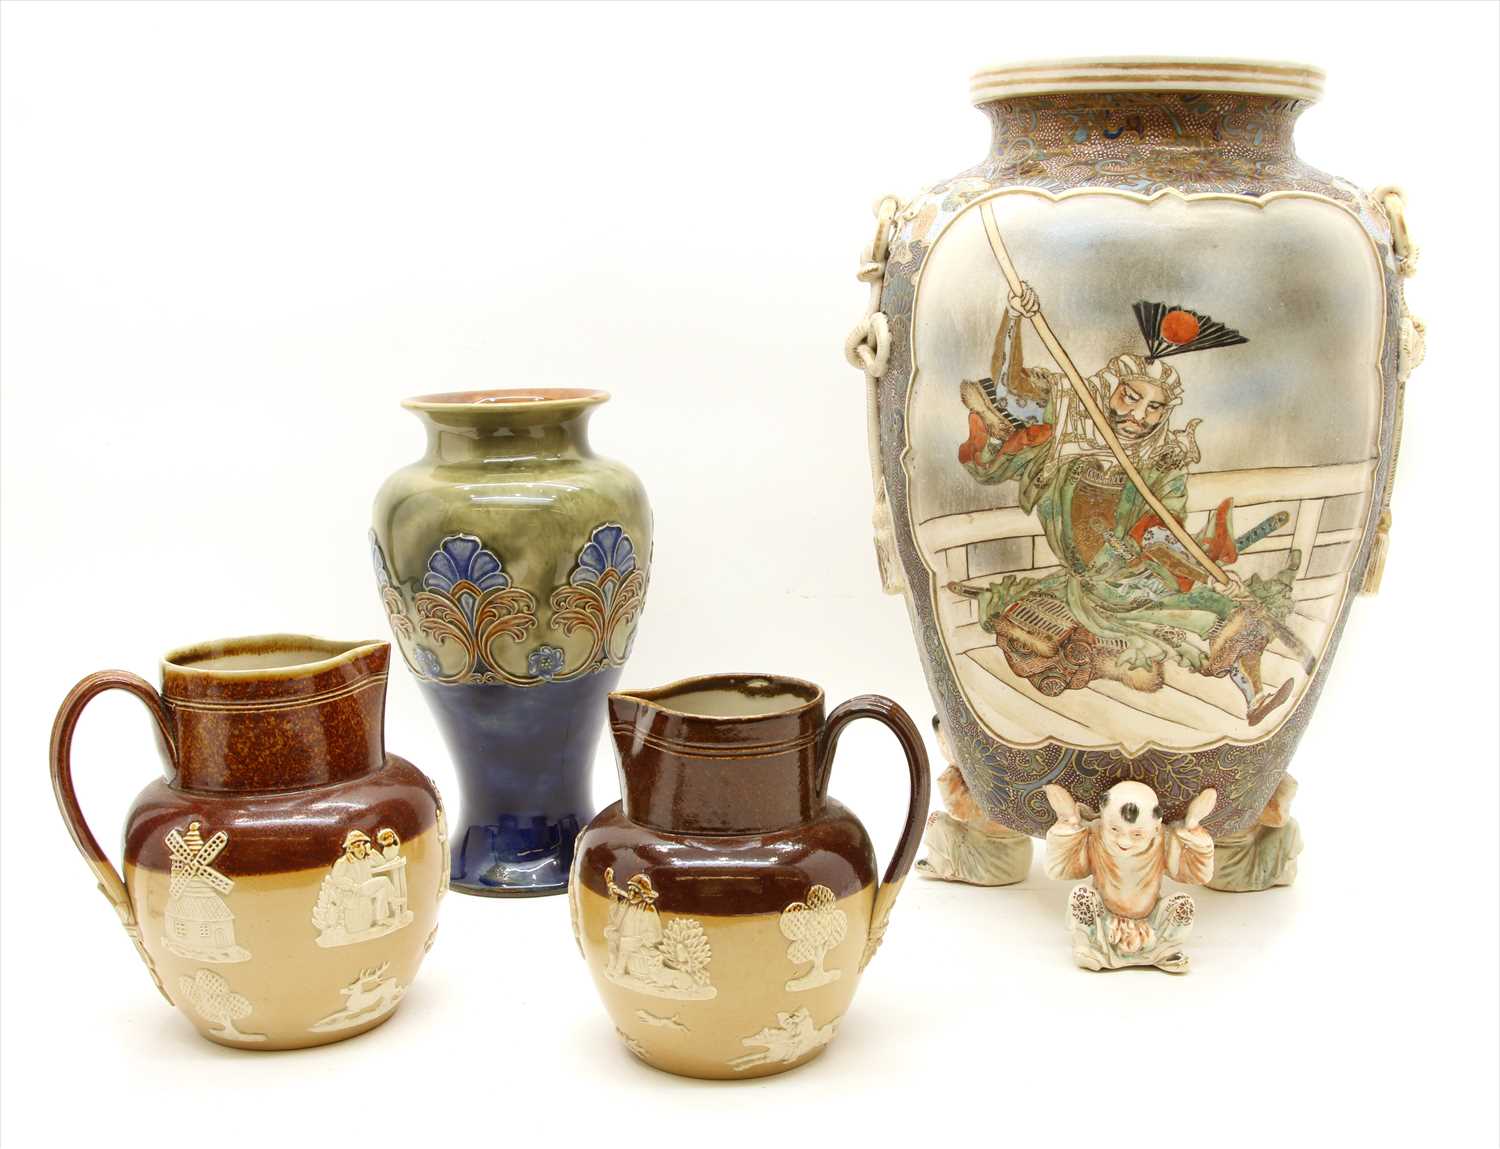 Lot 251 - A large 20th century Japanese Satsuma pottery vase